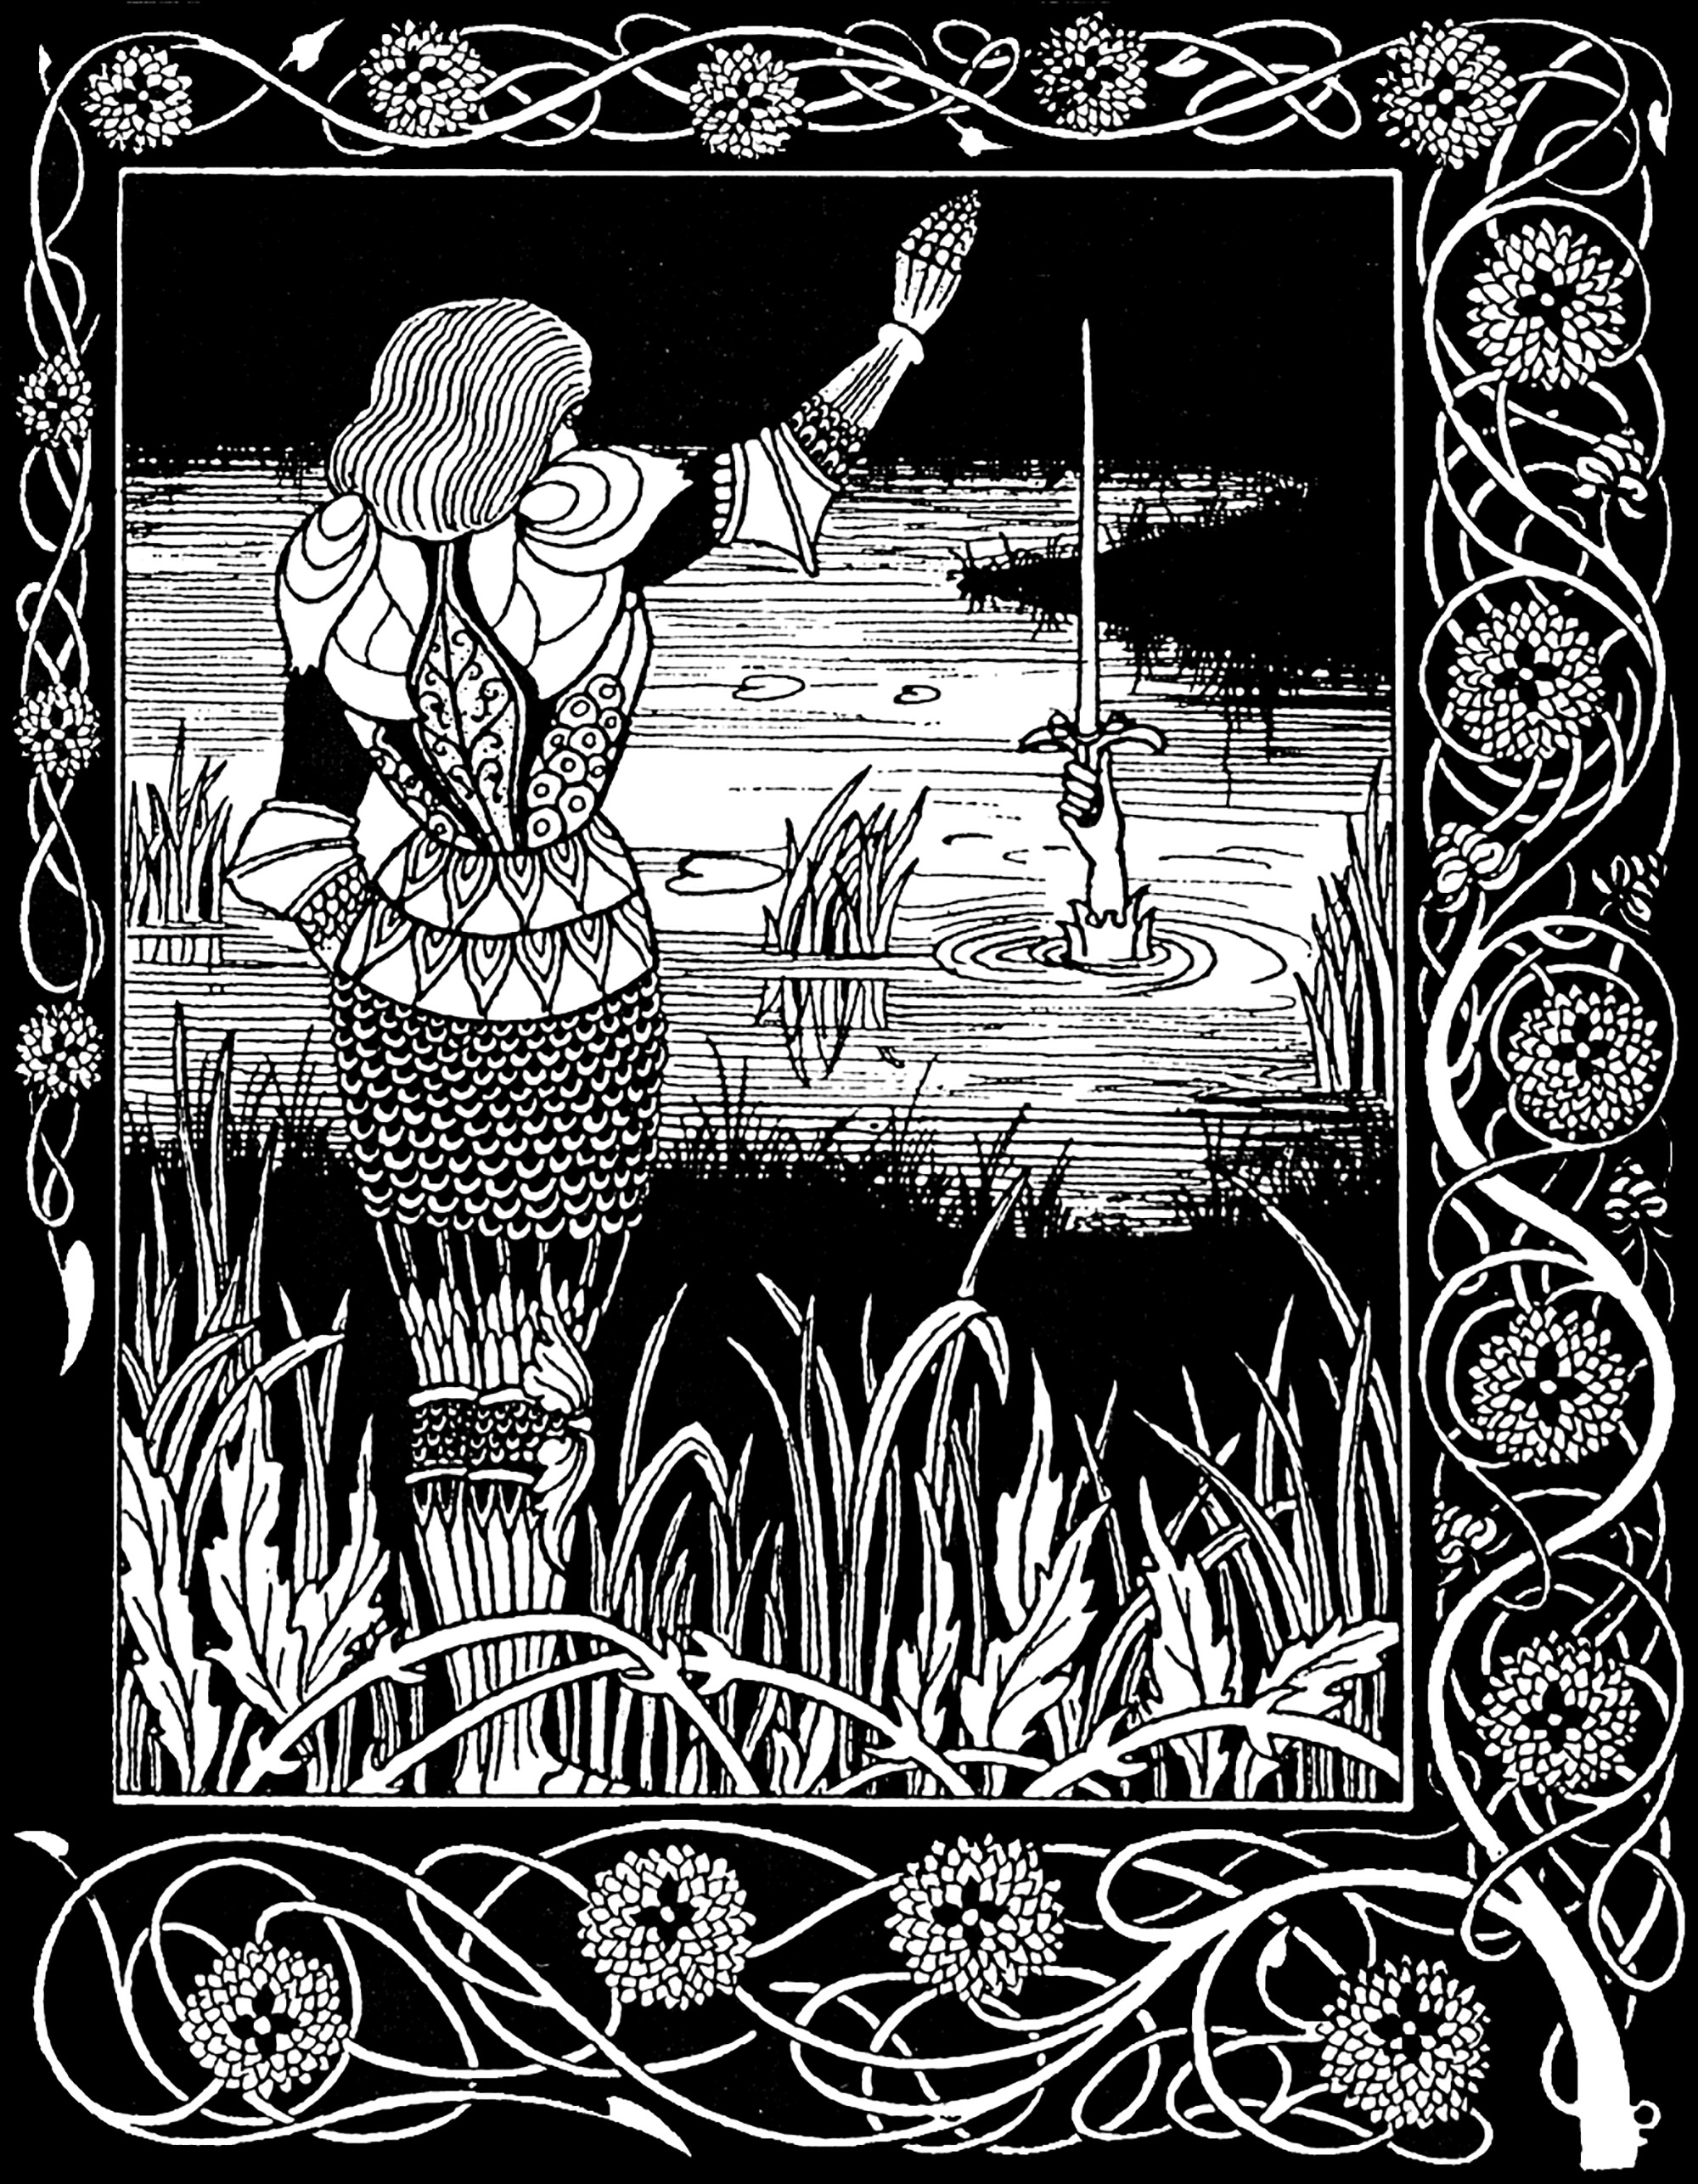 Sir Bedivere wirft Excalibur, Artus' Schwert, in den See, aus dem es stammt. Illustration von Aubrey Beardsley (1872-1898) für eine Ausgabe von La Mort d'Arthur von Sir Thomas Malory (1893).